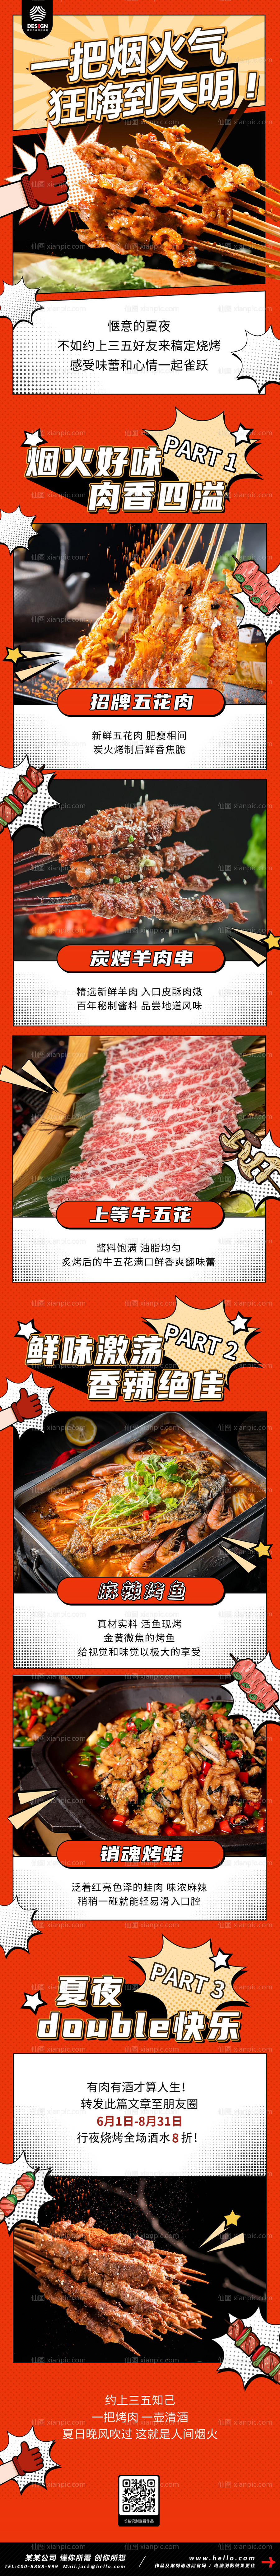 素材乐-烤肉烧烤餐饮美食长图营销海报